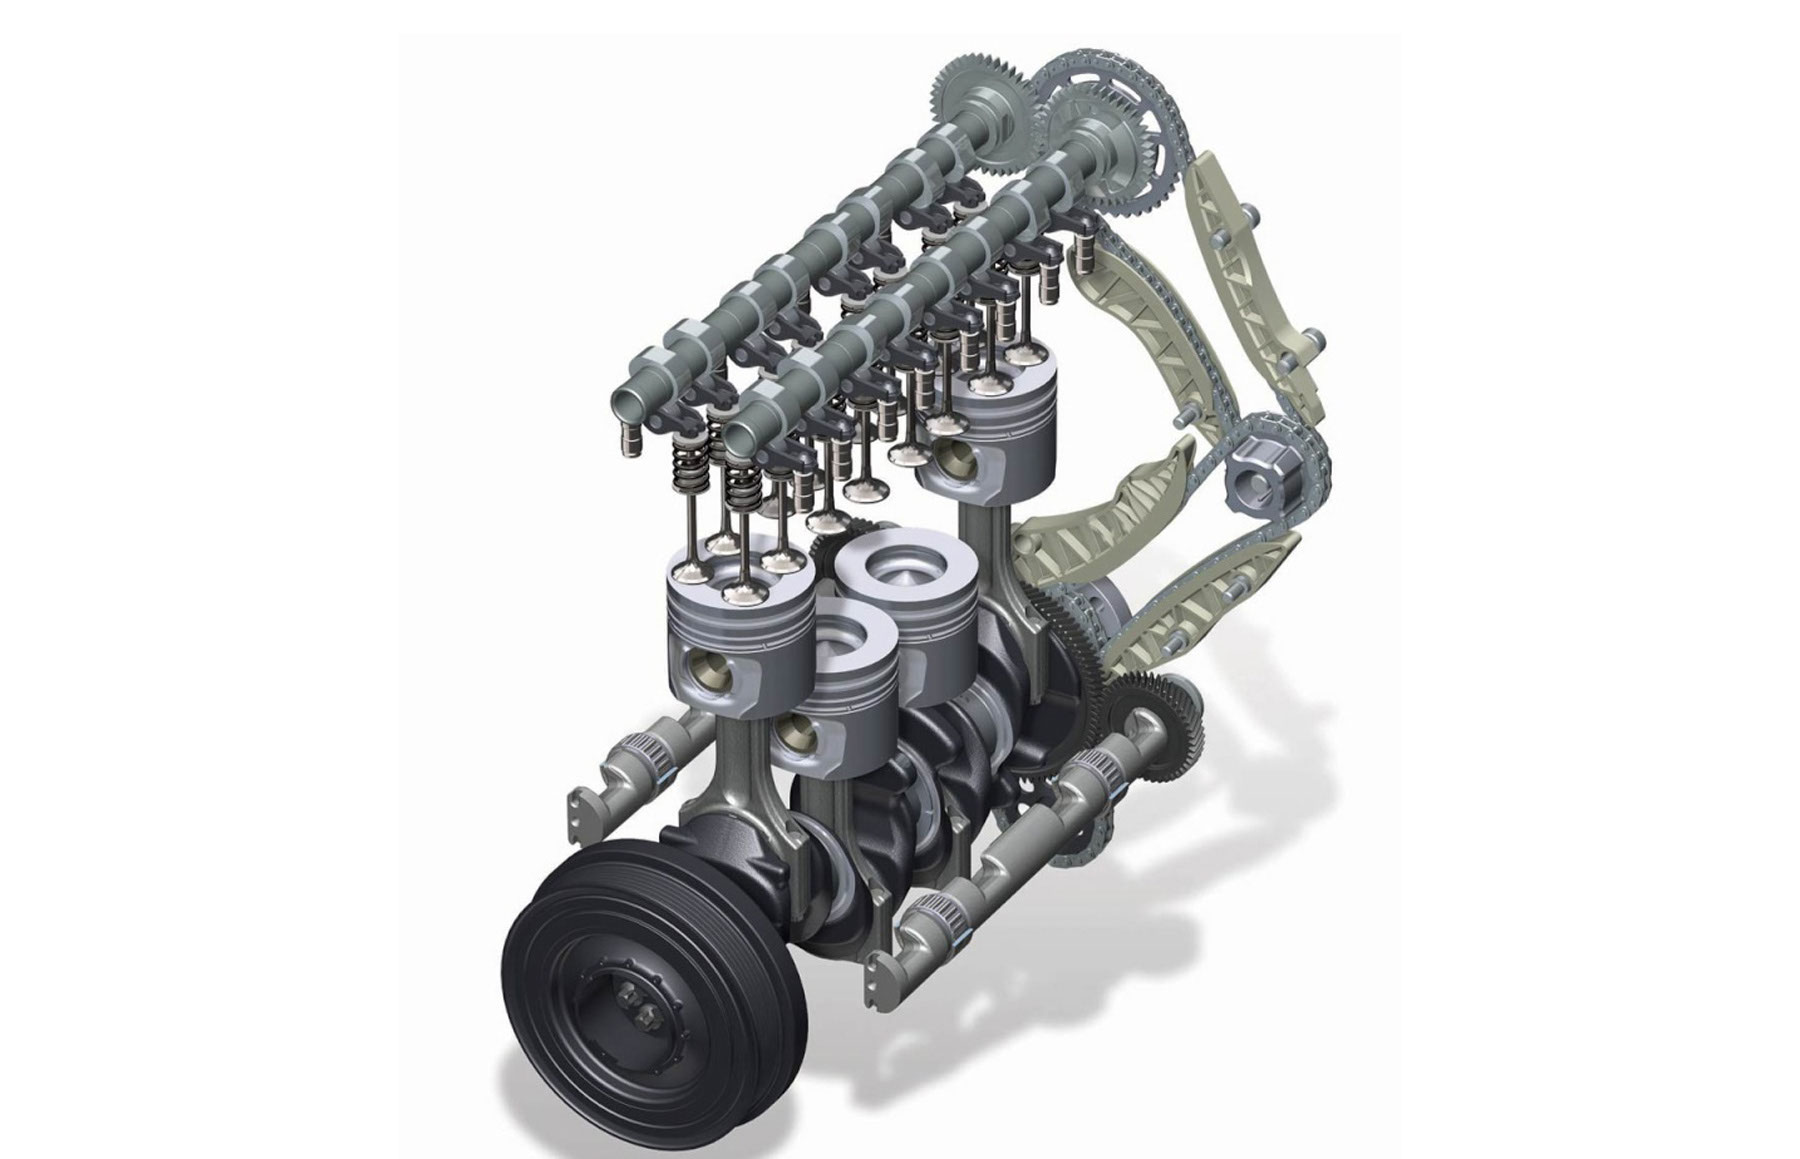 Avería en cadena de distribución motores N47 de BMW - Arroyo Auto taller mecánico Bosch Car Service